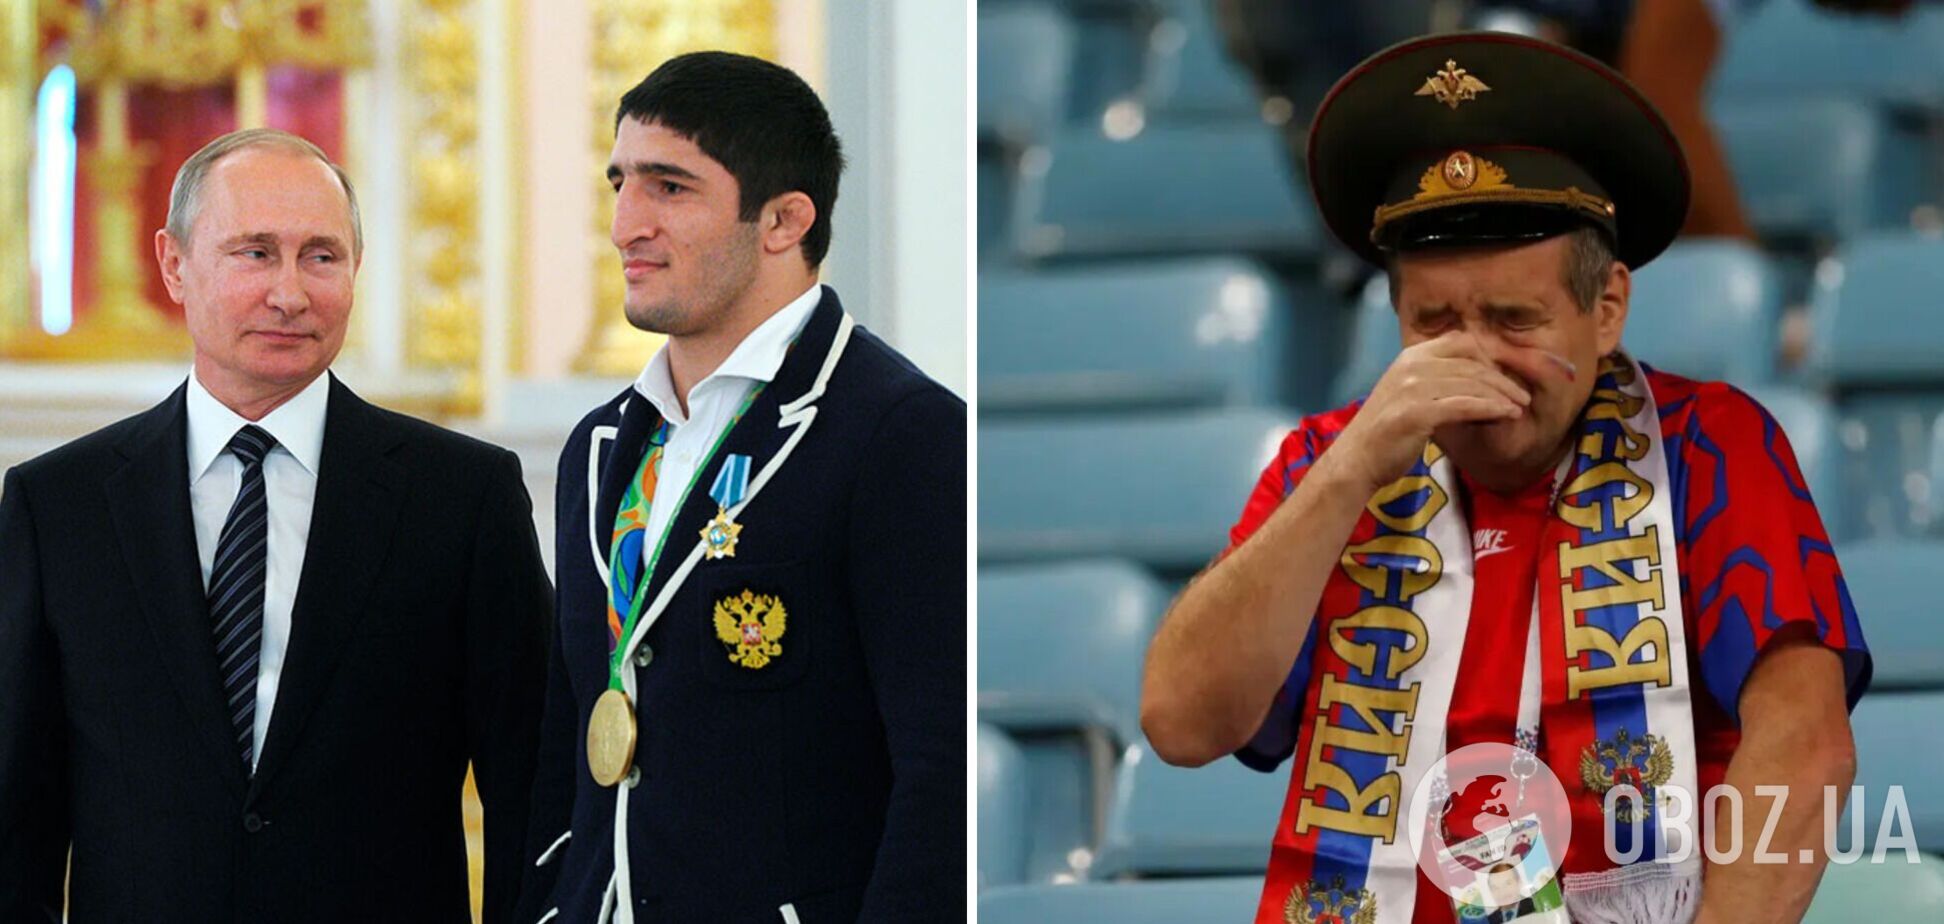 У міжнародній федерації 'вмили' росіян поясненням бану чемпіона ОІ з РФ